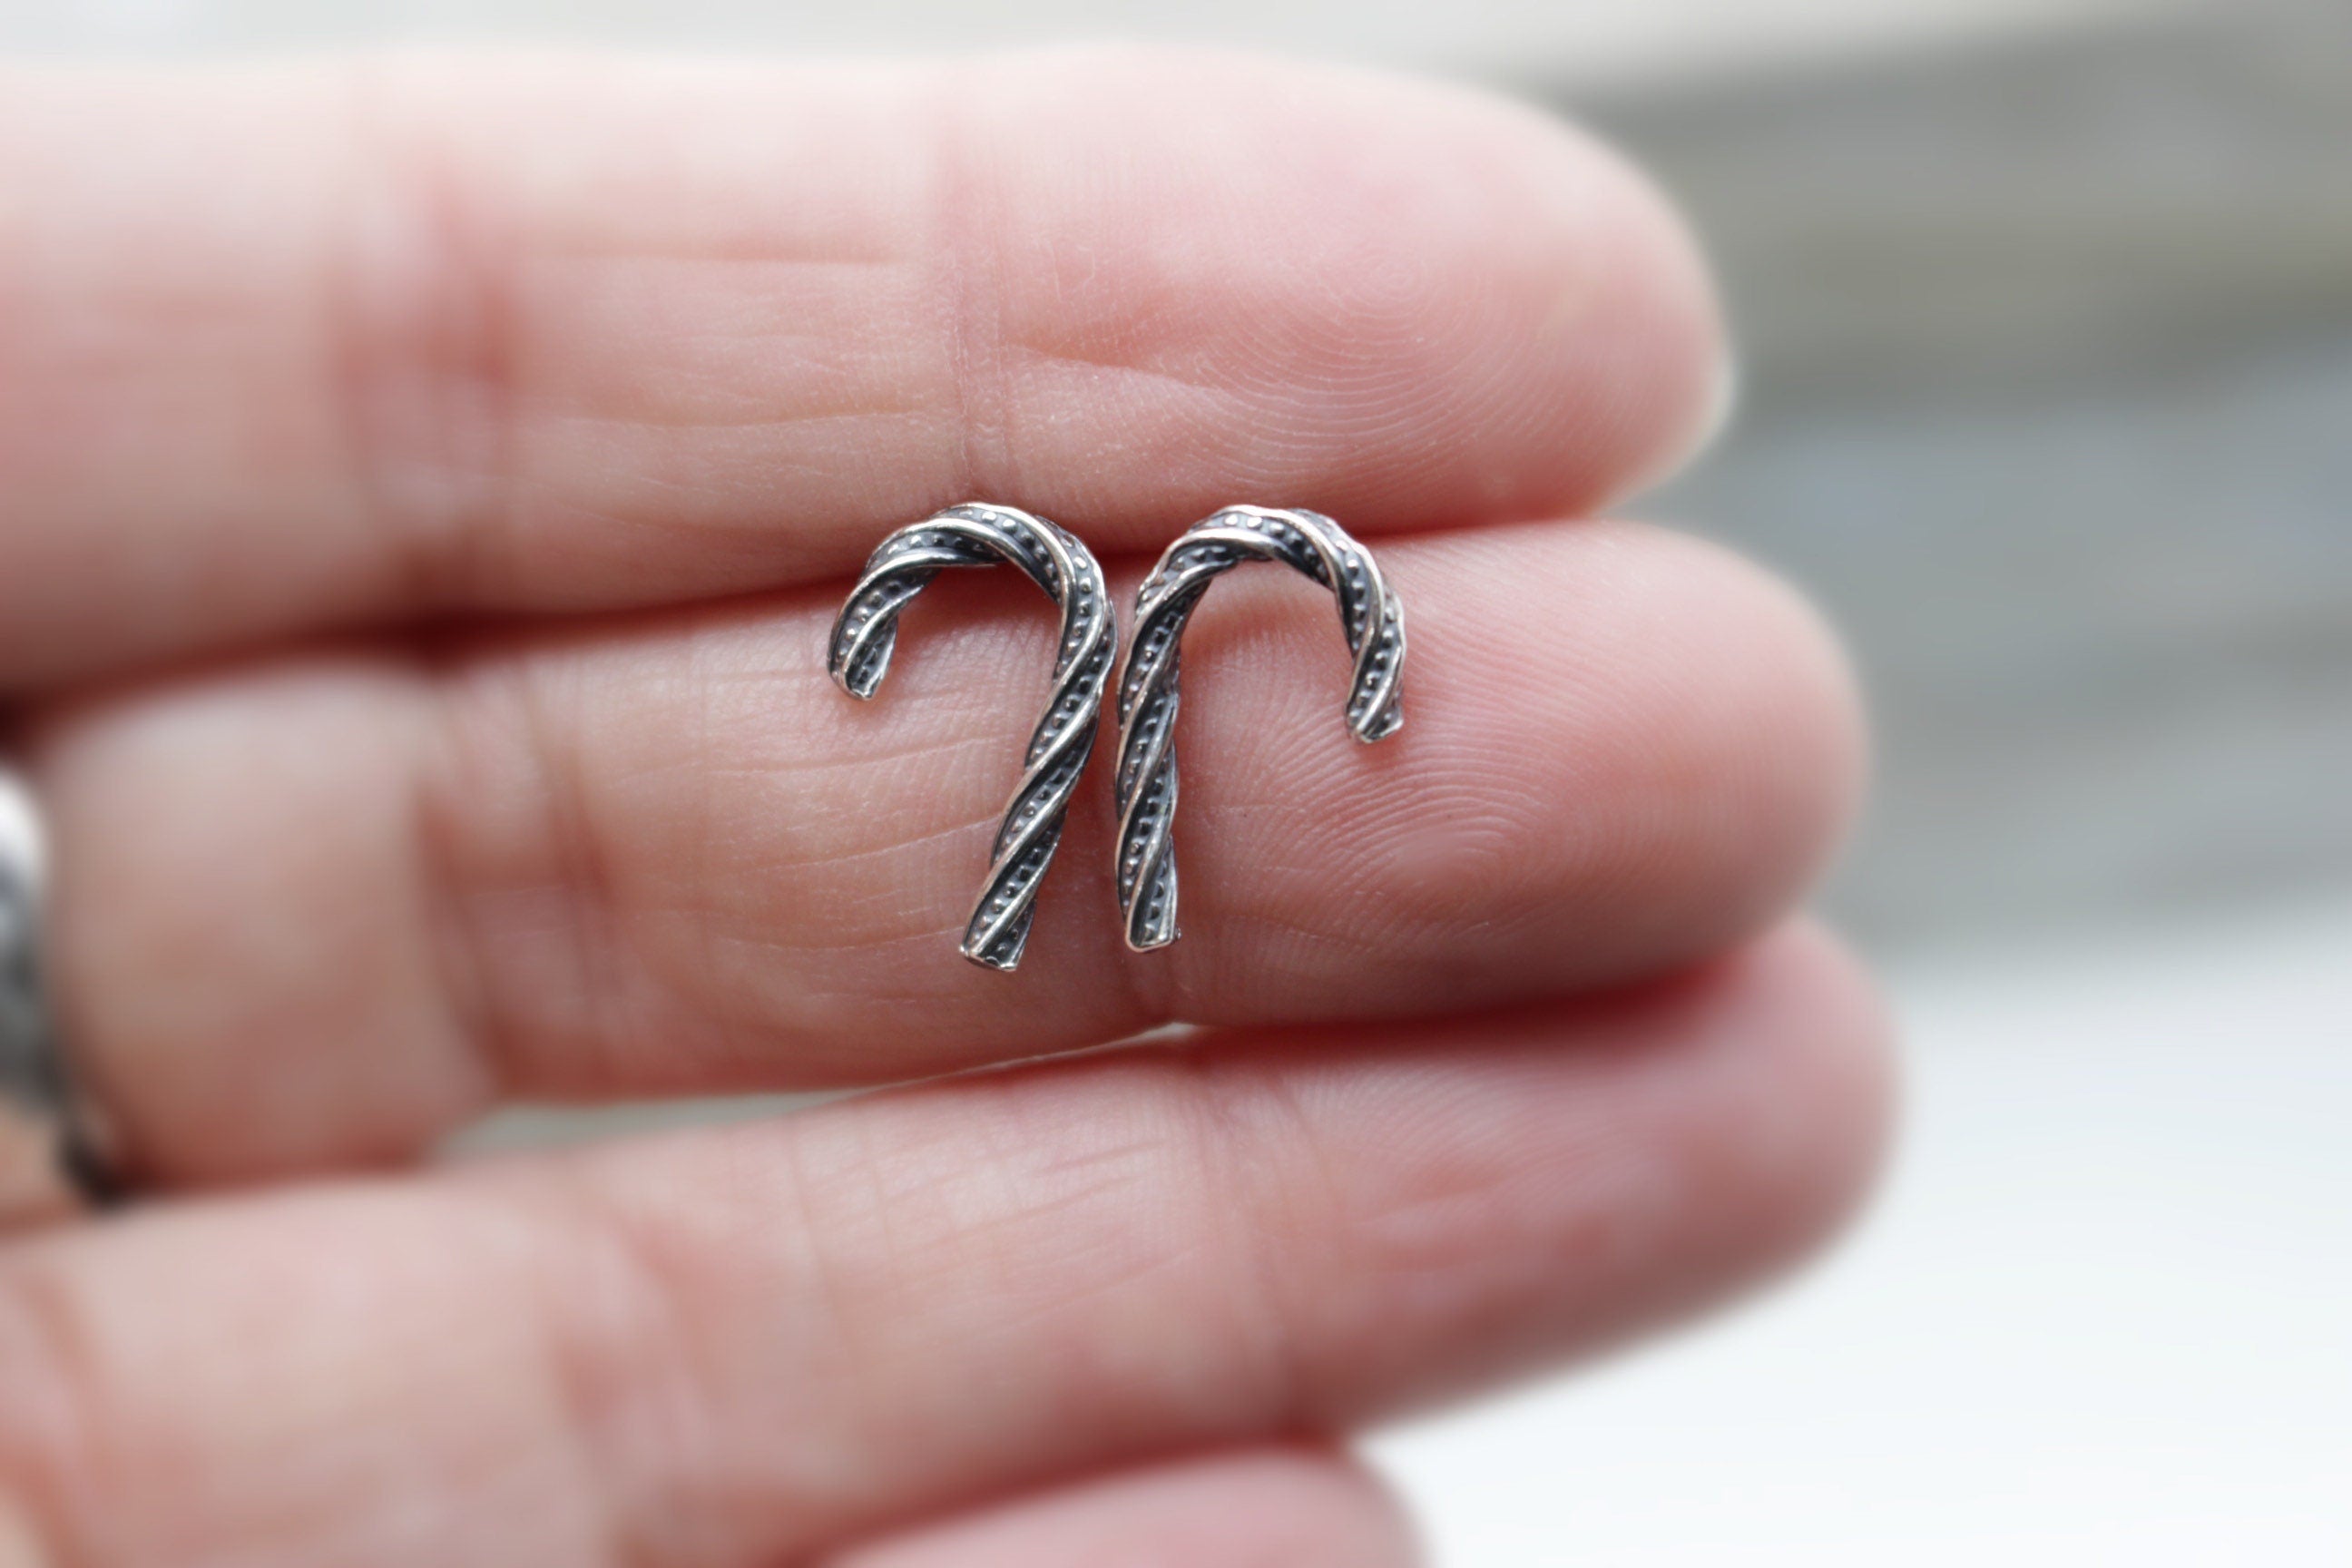 Candy cane earrings Sterling silver stud earrings